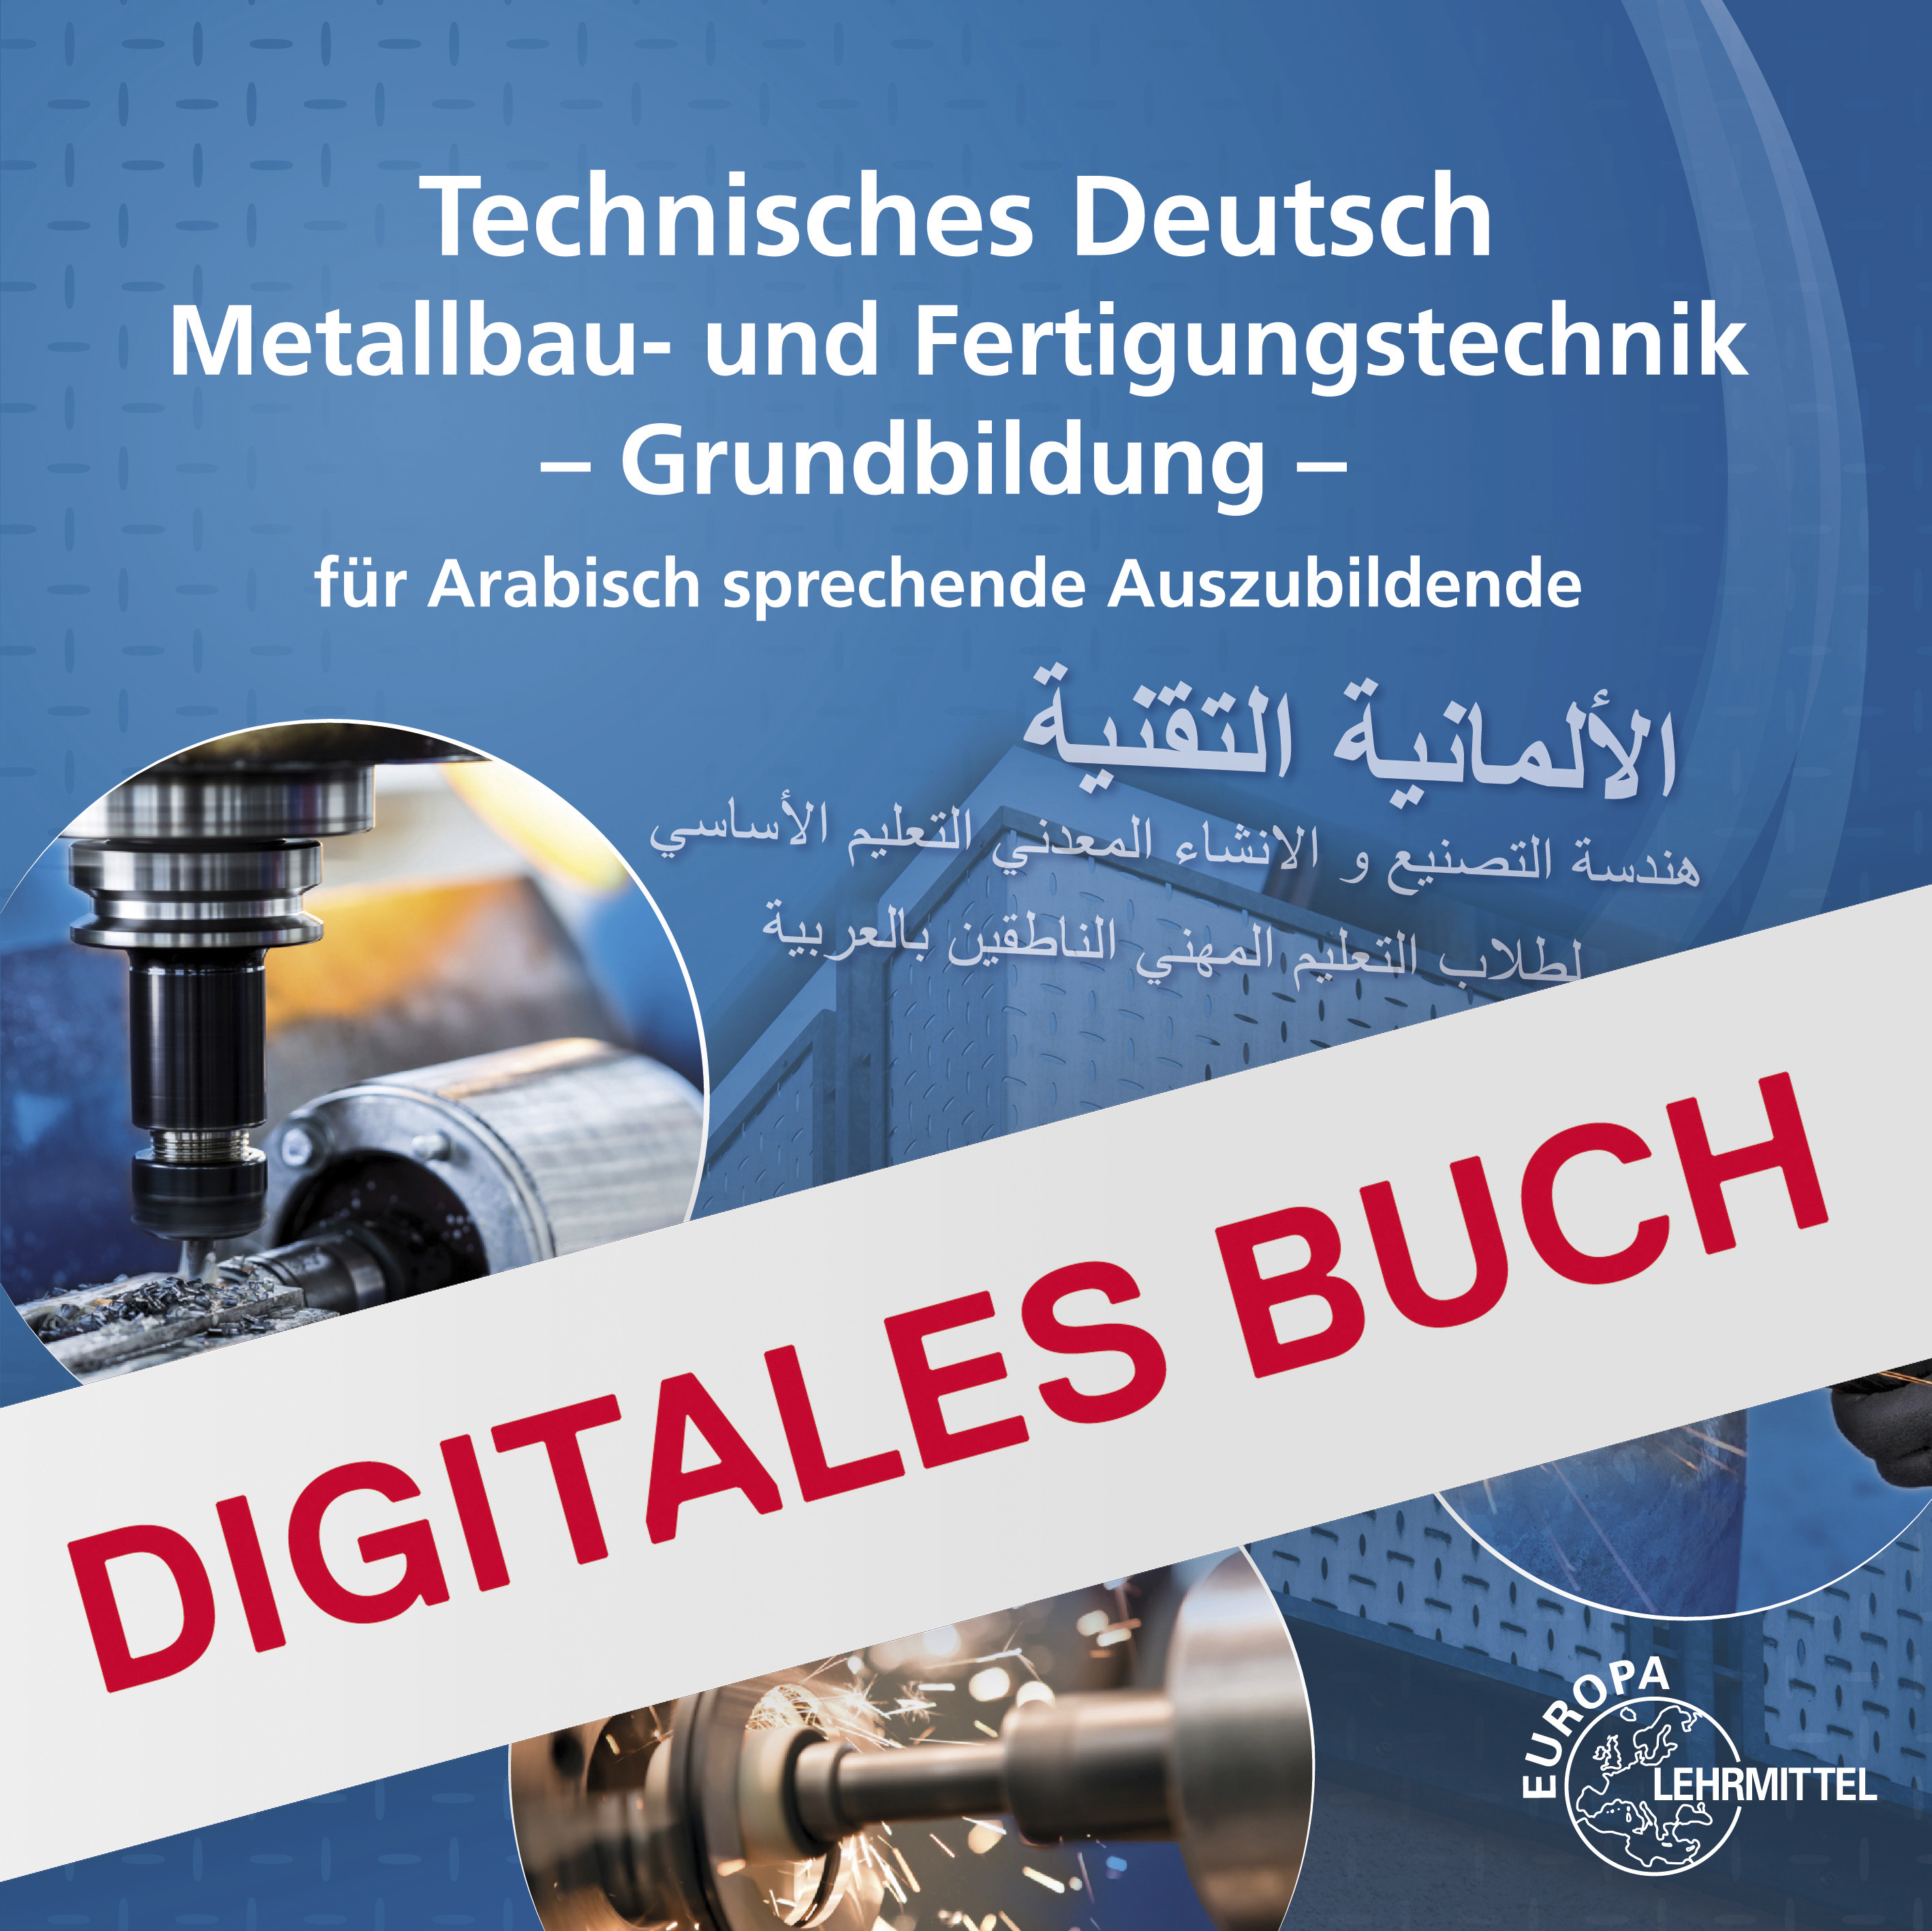 Technisches Deutsch für Arabisch sprechende Auszubildende - Digitales Buch